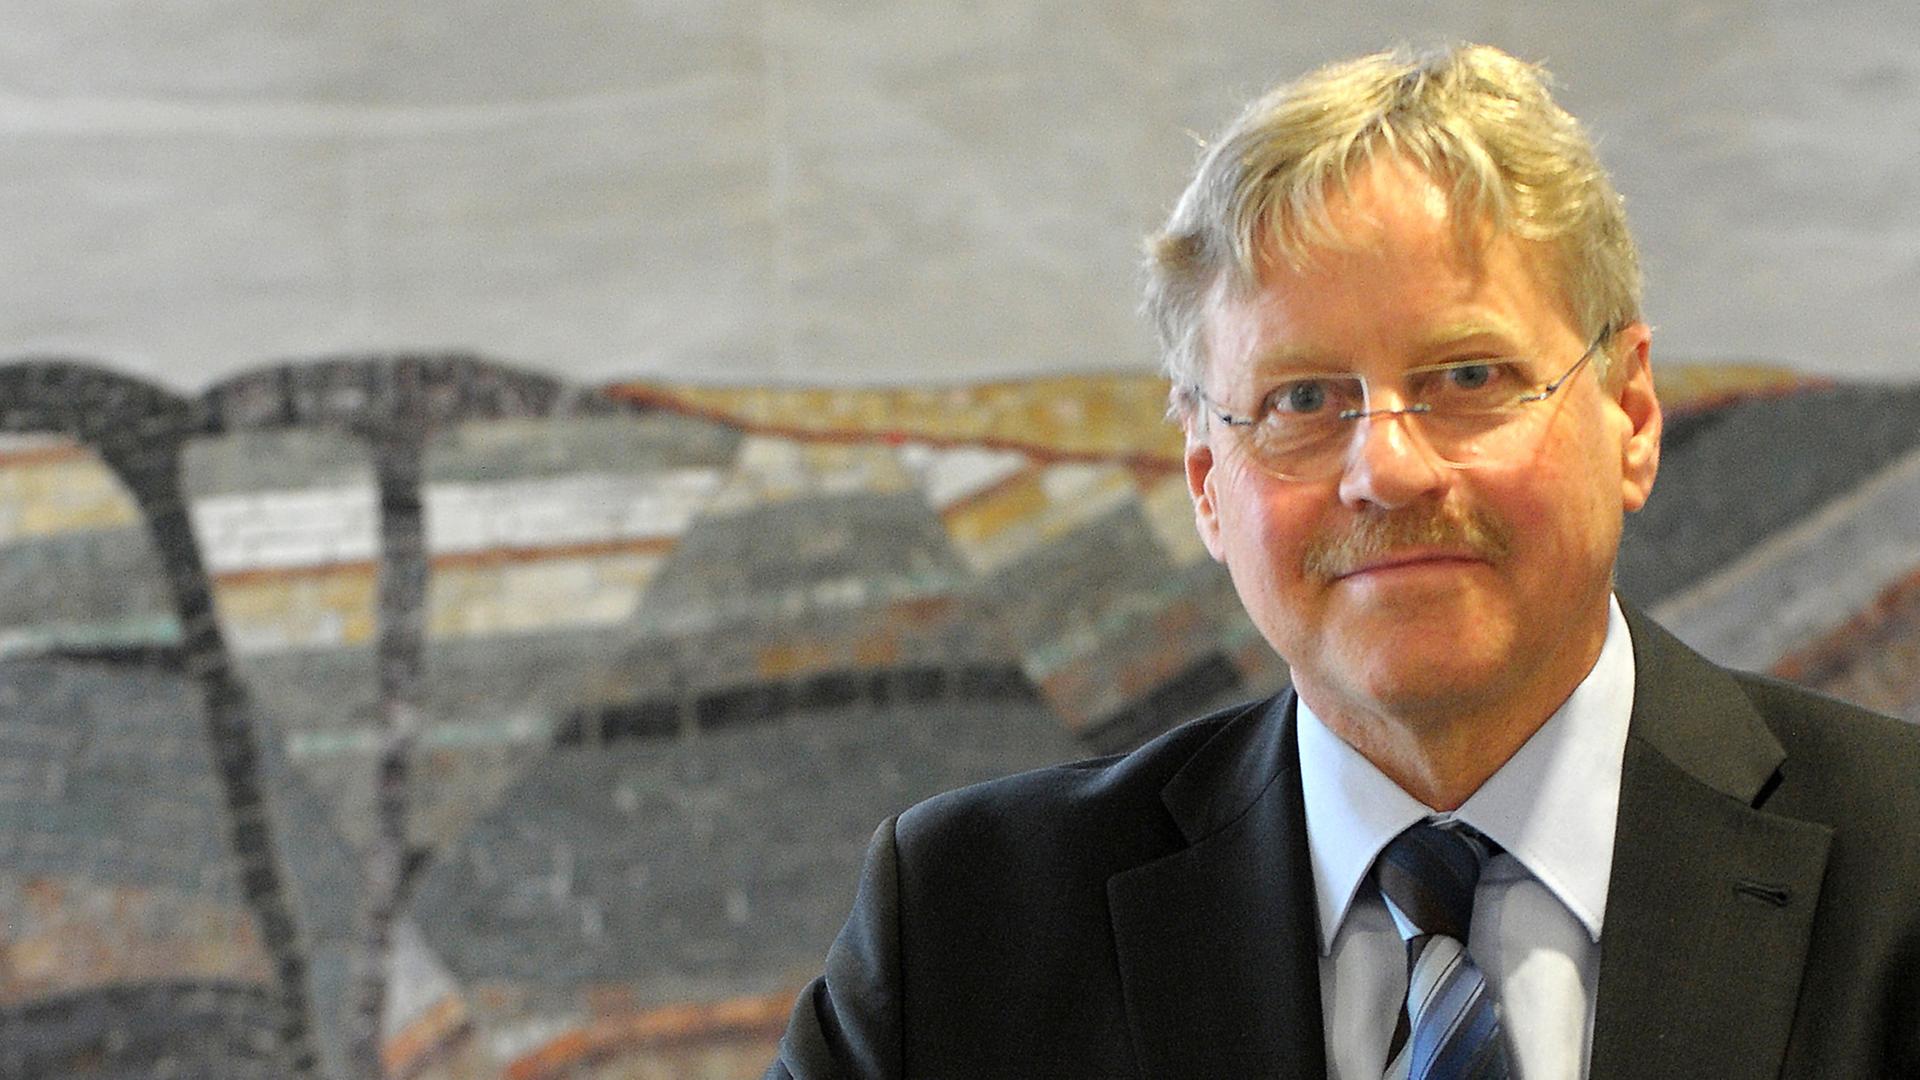 Hans-Joachim Kümpel, Präsident der Bundesanstalt für Geowissenschaften und Rohstoffe (BGR) in Hannover, aufgenommen 2013